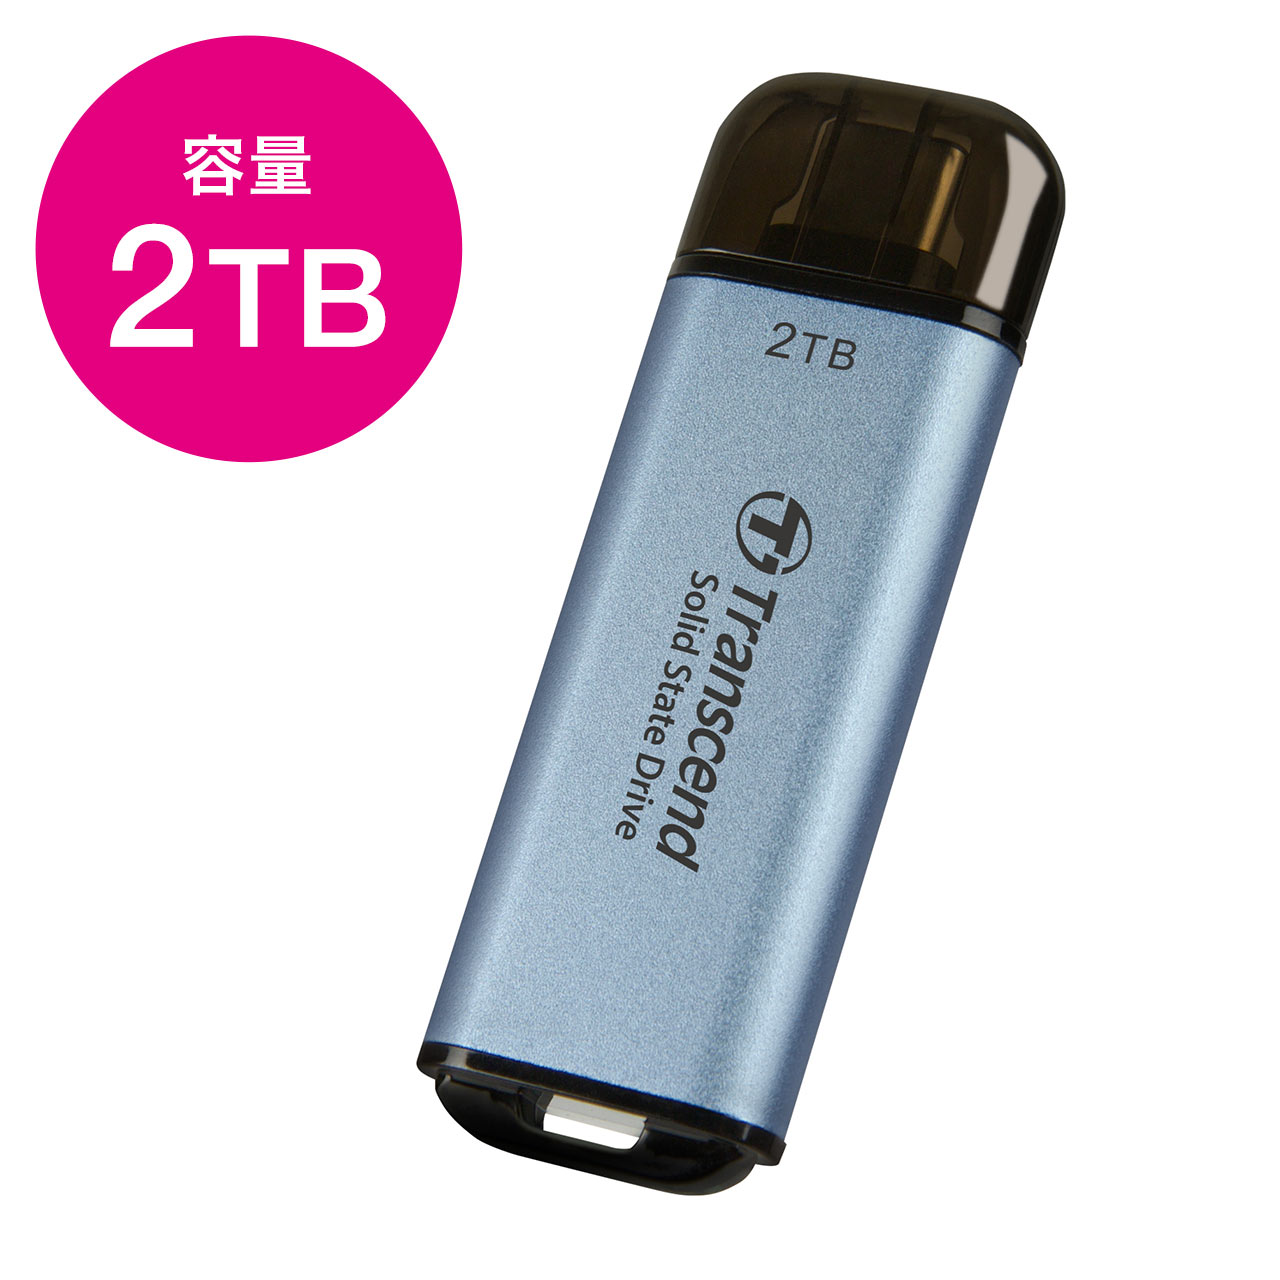 商品詳細USB Type-CコネクタのスティックタイプSSD。10Gbpsの高速データ転送とSLCキャッシュを備えたポータブルSSDで、最大1050/950MB/sの読出し/書込み。Transcend（トランセンドジャパン）製。Transcend社メーカー5年保証。TS1TESD300C。2TB。スカイブルー。特長●ESD300はスティック型のSSDで、10Gbpsの高速データ転送が可能です。●USB Type-Cコネクタを搭載しており、多くの機器で利用可能です。●10Gbpsの高速データ転送とSLCキャッシュを備えたポータブルSSDで、最大1050/950MB/sの読出し/書込みを提供します。また、USB 2.0や3.0のデバイスとも互換性があります。●4K動画や高解像度の写真の保存に最適です。コンパクトサイズなので、どこに行く場合もストレスなく携帯できます。●多くの機器で使用でき、Windows、MacOS、AndroidのOSに対応しています。高速転送を提供するだけでなく、PC、タブレット端末、スマートフォン、ゲーム機等のストレージ拡張にも利用できます。●丈夫で放熱性に優れたアルミケースを採用したESD300は、データをしっかり保護できるので、持ち運ぶ場合も安心です。仕様■カラー：スカイブルー■サイズ：W60.1×D20×H7.8mm■重量：9g■USB種類：USB Type-C■接続インターフェース：USB 10Gbps (USB 3.2 Gen2)■フラッシュ種類：3D NANDフラッシュ■容量：2TB■動作環境温度：0°C(32°F) から 60°C(140°F)■動作電圧：5V±5%■最大読込速度：1050MB/s■最大書込速度：950MB/s■認証：CE/UKCA/FCC/BSMI/EAC/RCM■保証期間：ご購入日より5年（トランセンド社 メーカー保証）※モバイル機器はUSB OTGに対応している必要があります。※※1GBは1,000,000,000バイトですが、OS上では1,024MBを1GBとして計算されるため、0.93GBと表示されます。※転送スピードはすべての環境おいて保証されるものではございません。※すべてのブランド名は各社の登録商標です。※仕様は予告なく変更される場合がございます。※商品の仕様や画像が製品と異なる場合がございます。対応機種■対応OS：Windows 11・10・8.1・8・7macOS 10.10以降iOS17以降■対応機種：Windows 搭載(DOS/V)パソコン、Apple Mac シリーズ各社スマホ、タブレット、Type-CポートのあるiPad、iPhone【2023年10月登録】関連キーワード：売れ筋 人気 ランキング ハードディスクドライブ 0760557863540⇒こちらの商品のレビューを、もっと読みたい方はこちら商品ご購入後レビューを記載していただき『rakuten@sanwa.co.jp』宛に件名：ケースプレゼント　本文：ご注文番号　をご記入の上ご連絡下さった方『先着20名様』にカラビナ付きSSDケースをお届けいたします。※本キャンペーンは予告なく終了する場合がございます予めご了承下さい。